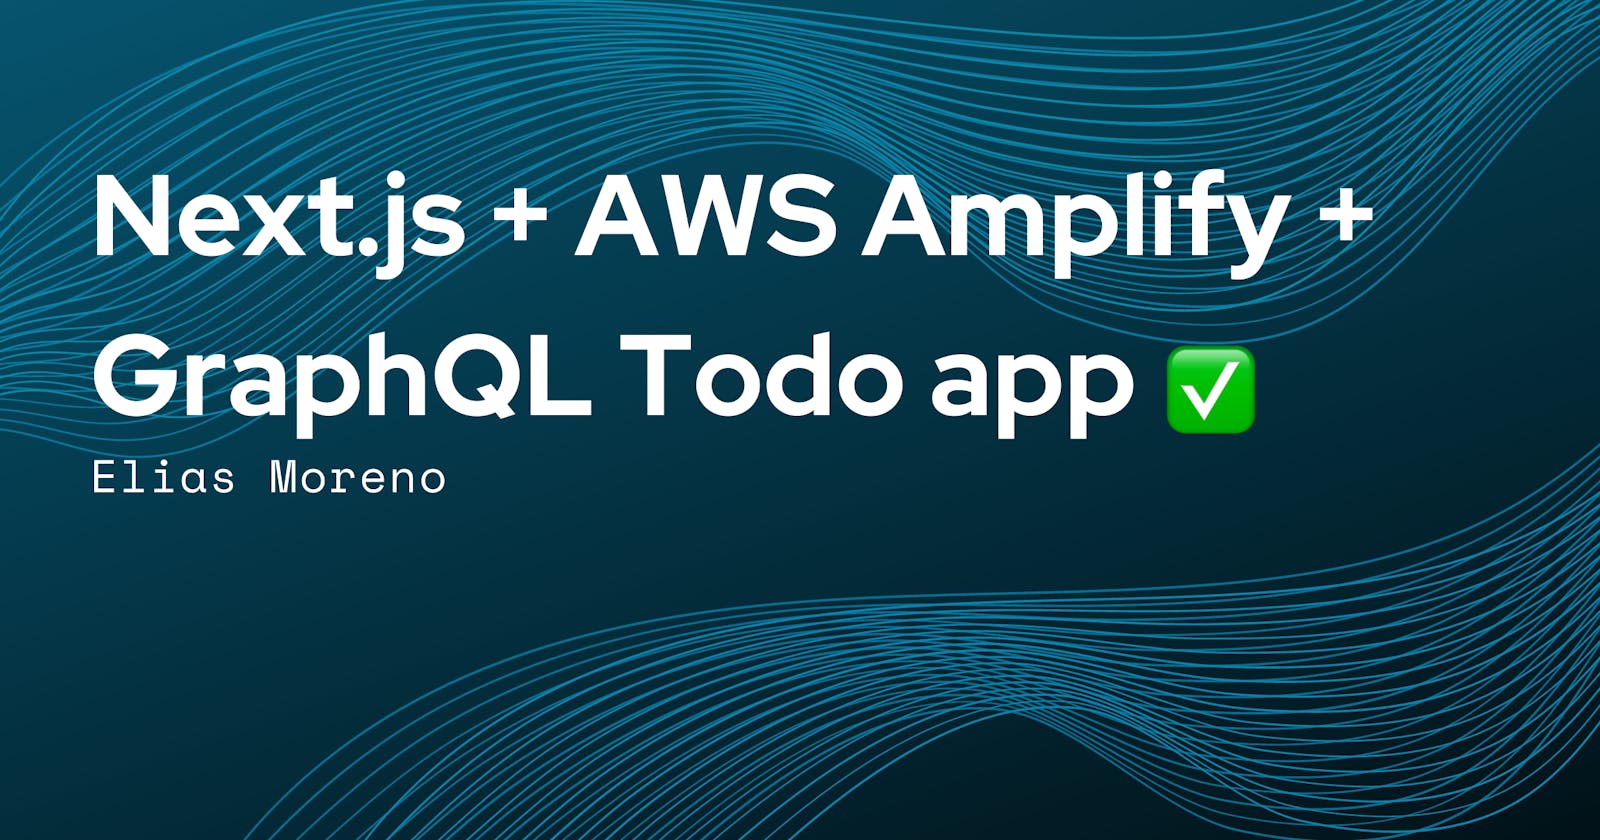 Next.js + AWS Amplify + GraphQL Todo app ✅